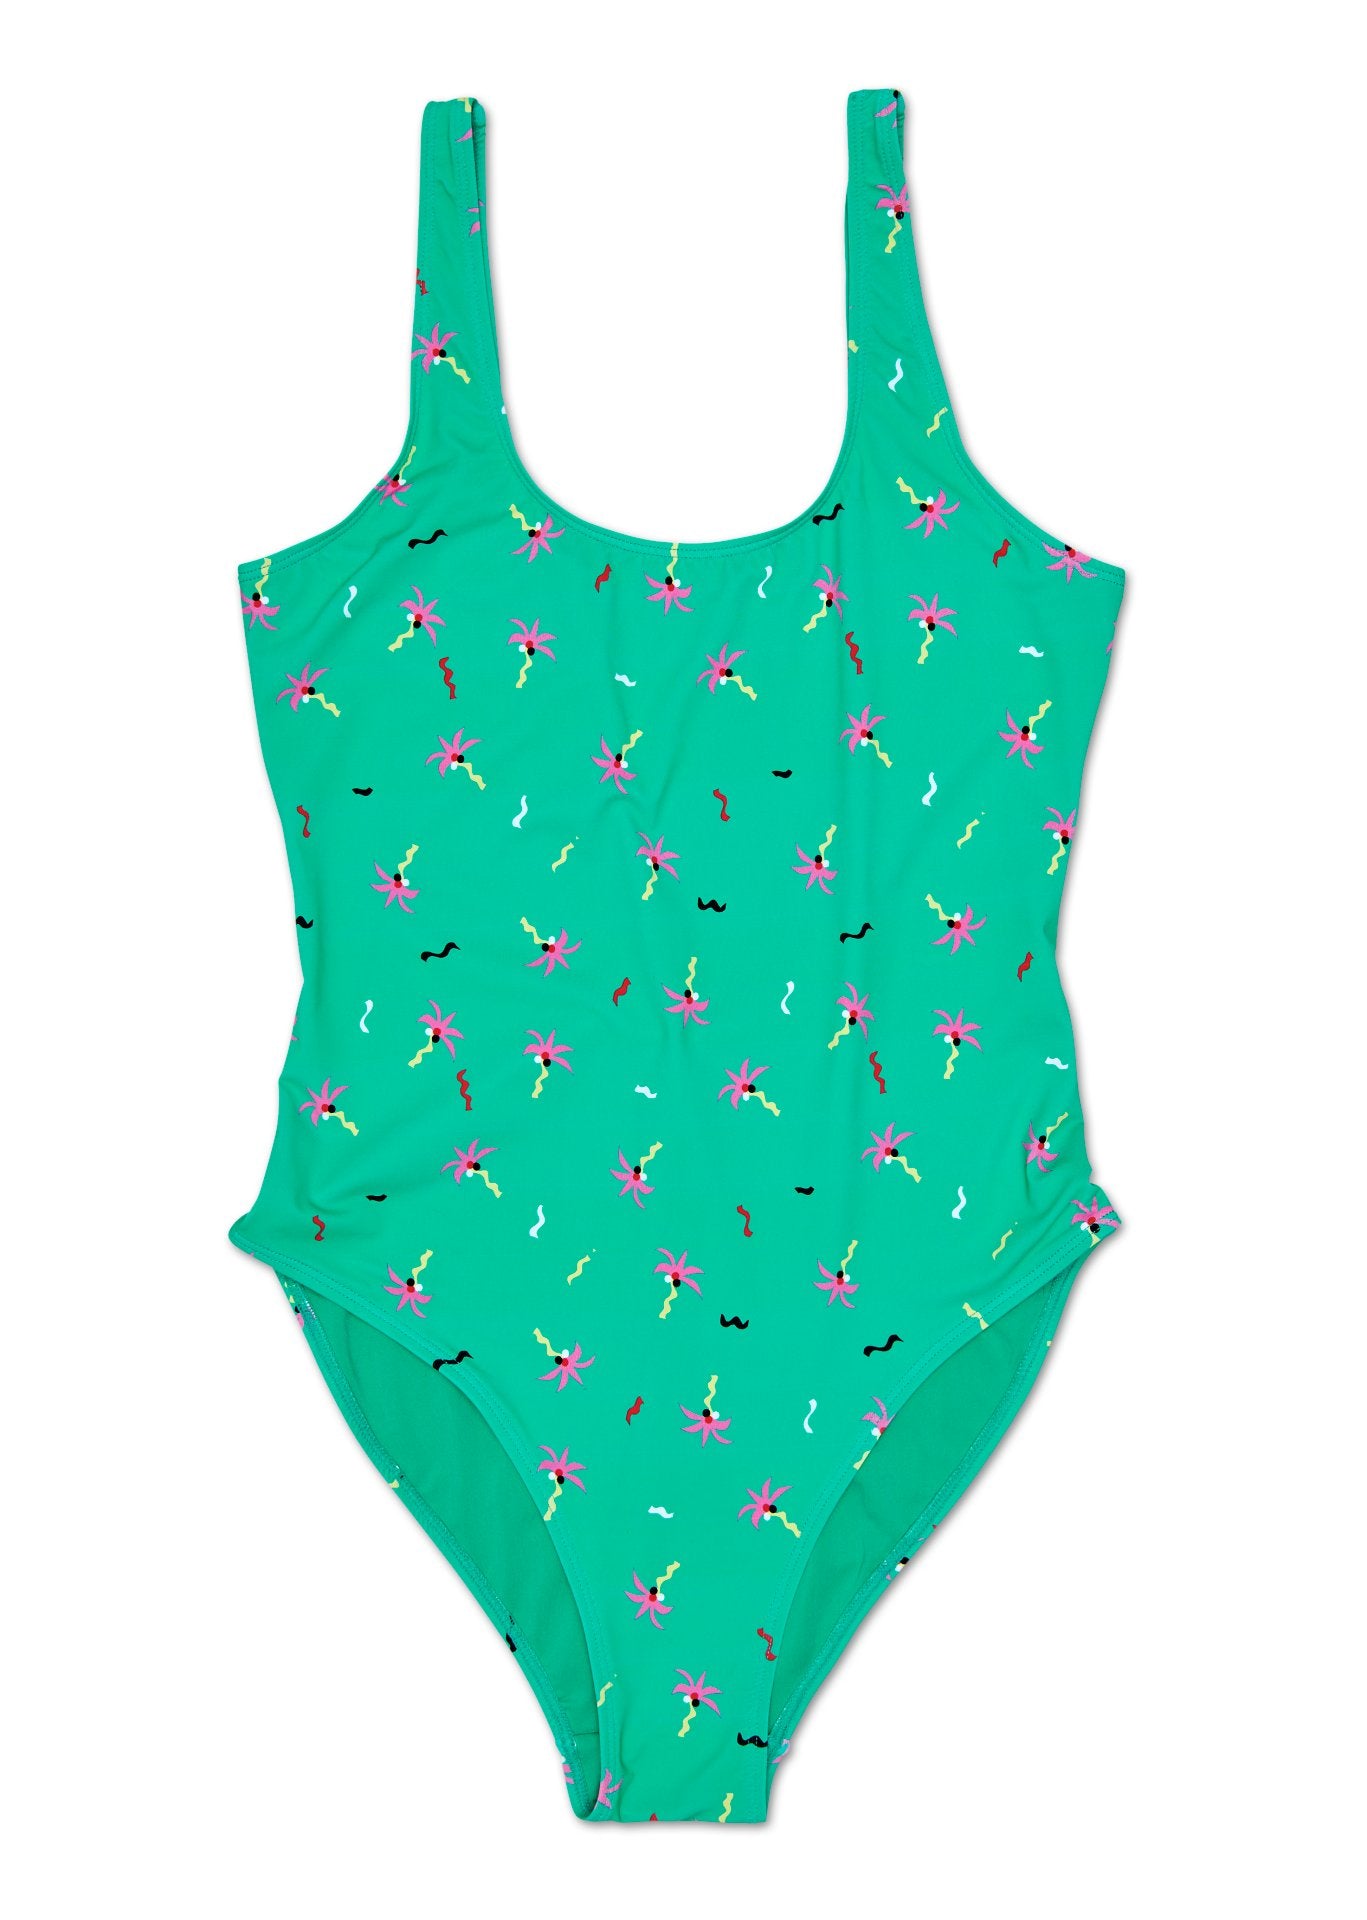 Dámské zelené plavky Happy Socks s palmami a konfetami, vzor Confetti Palm